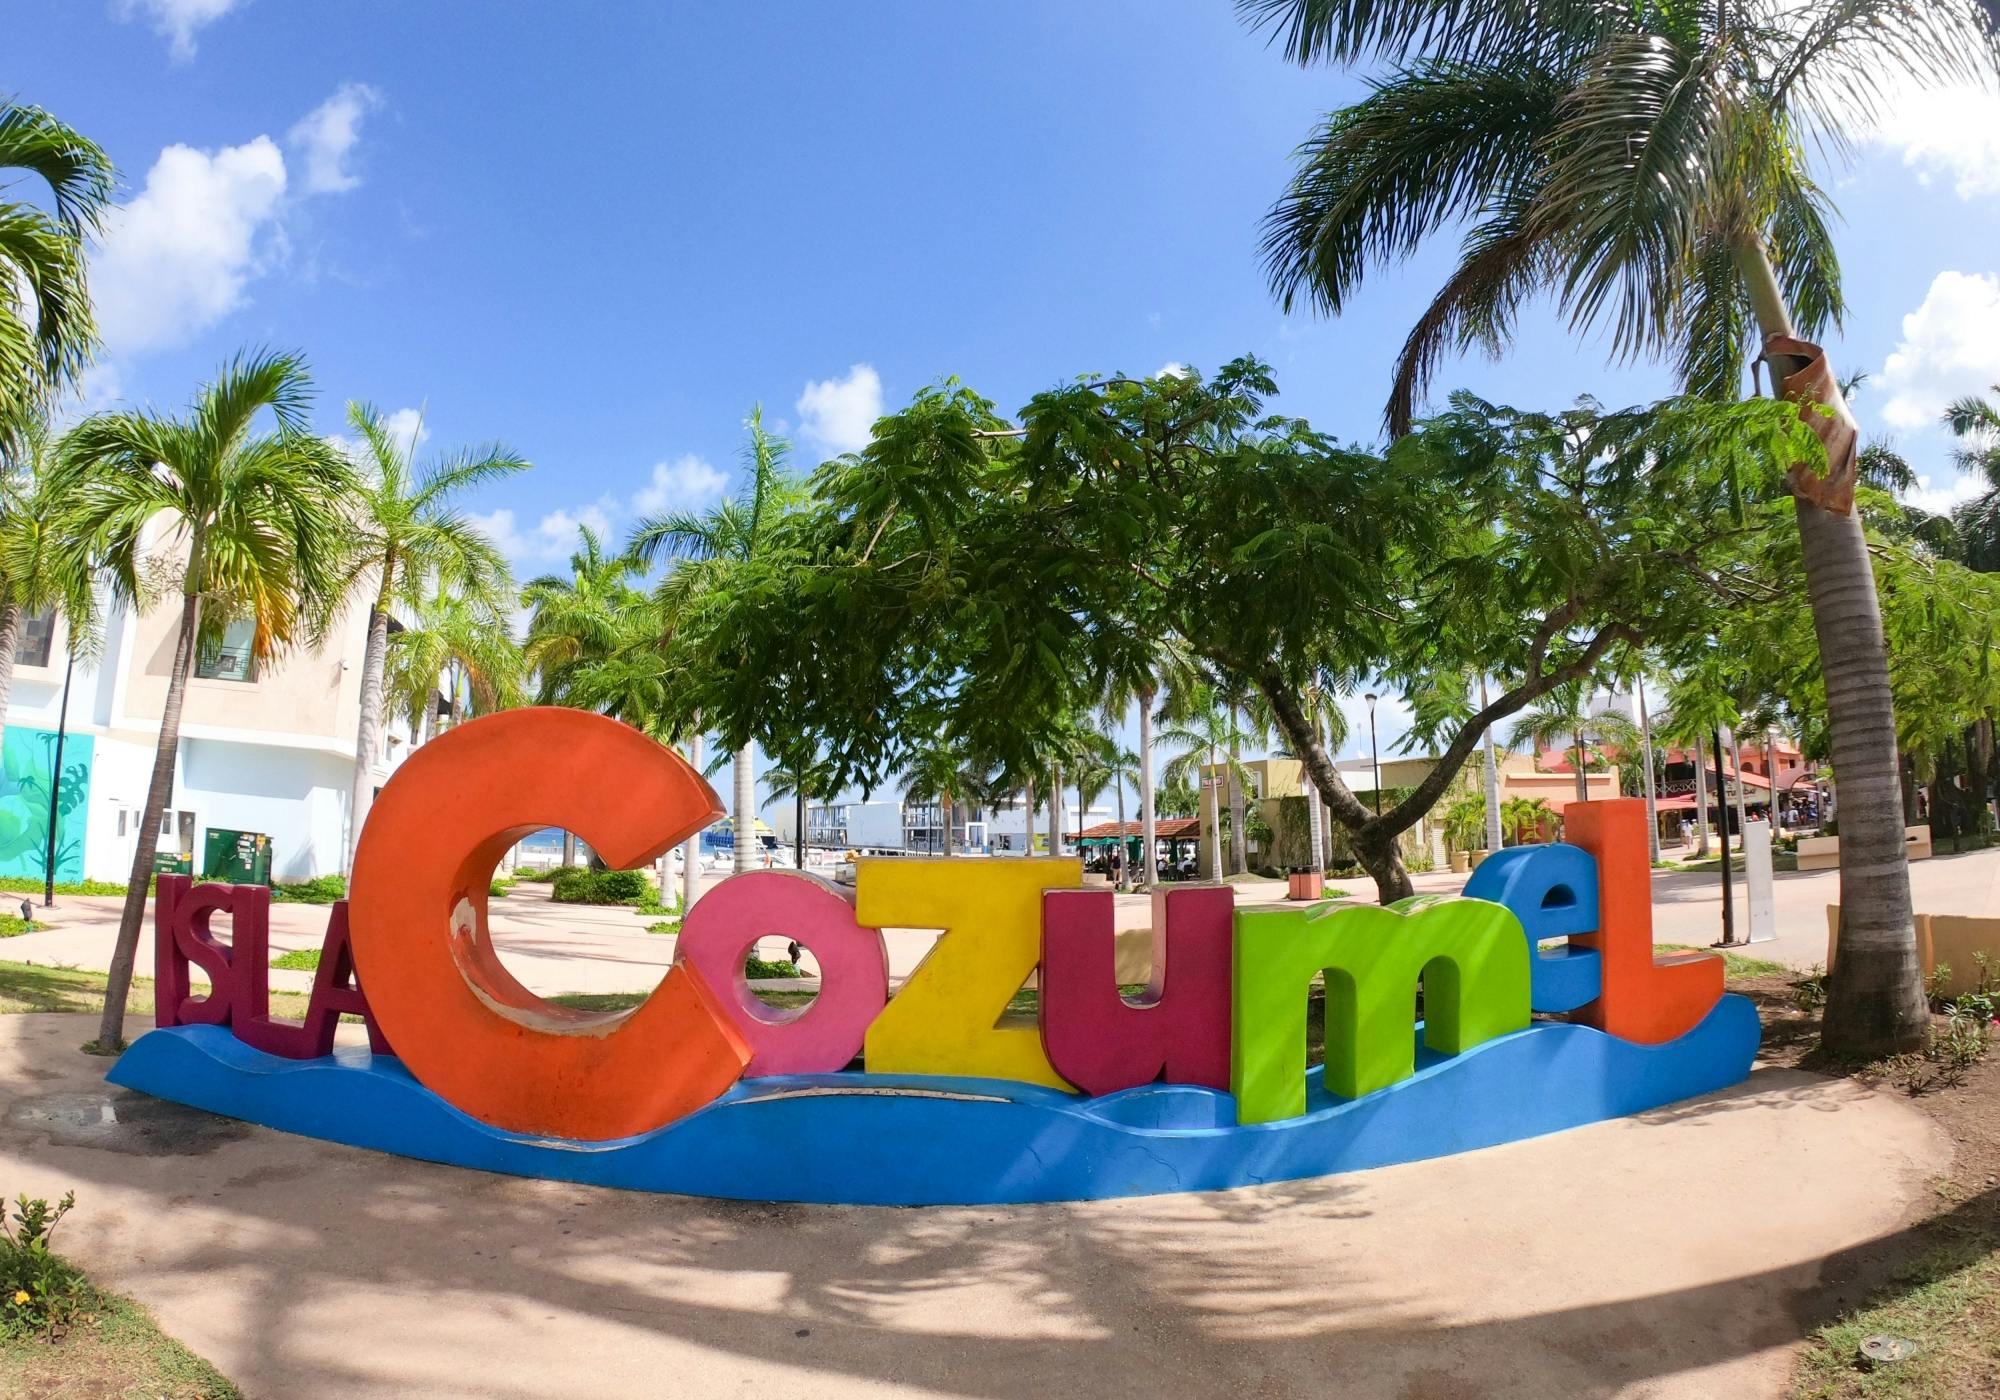 Cozumel island adventure from Cancun and Riviera Maya | musement